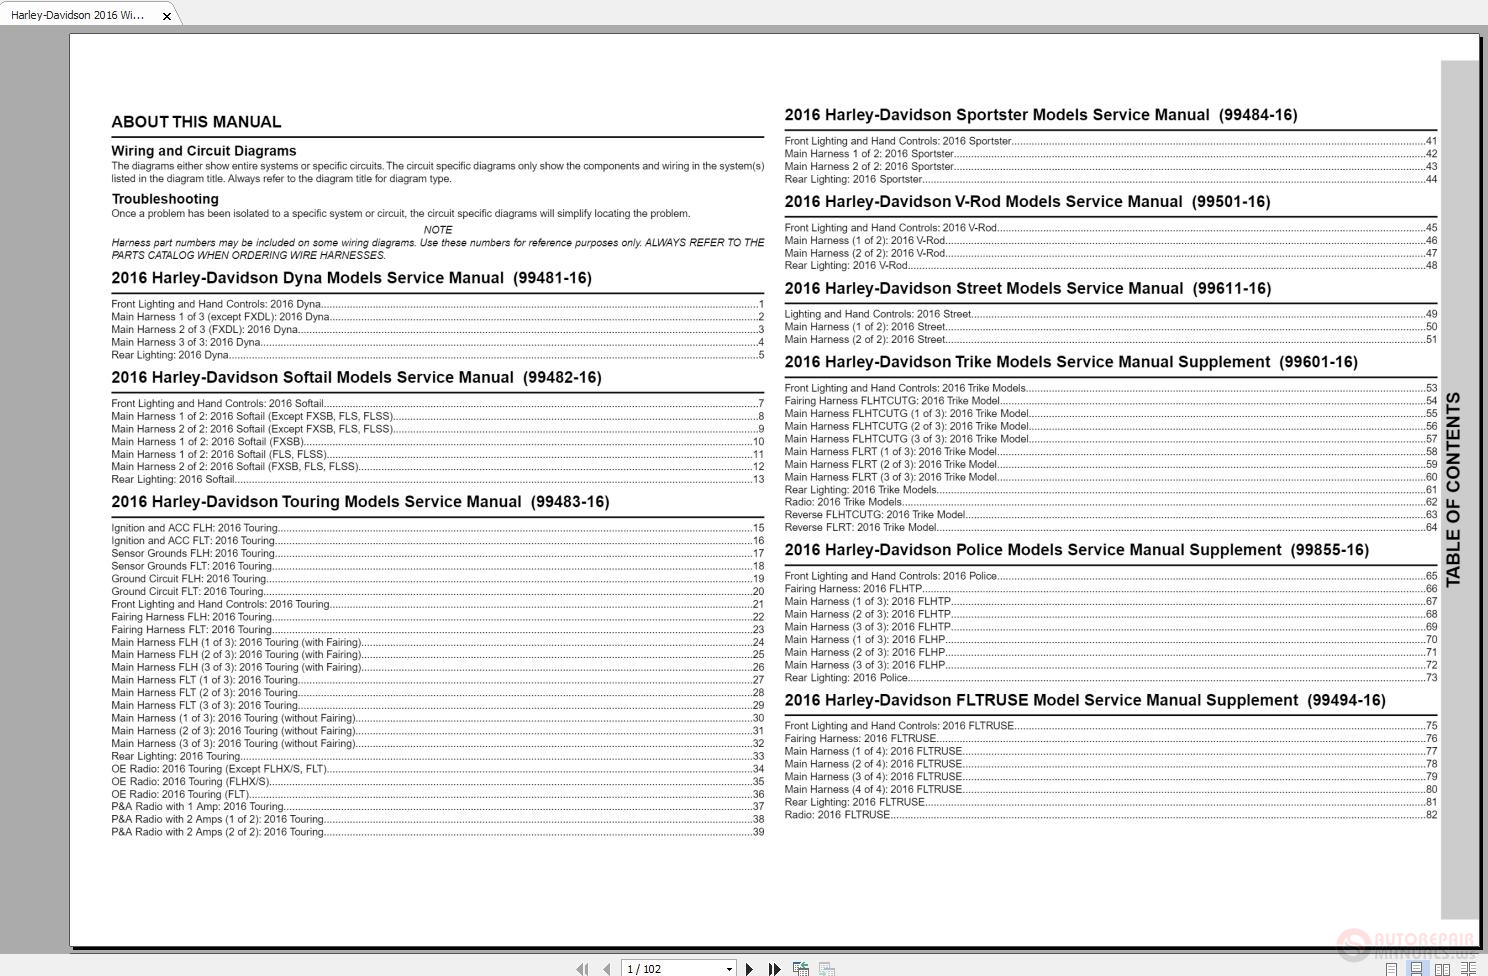 citroen c3 2004 manual pdf download